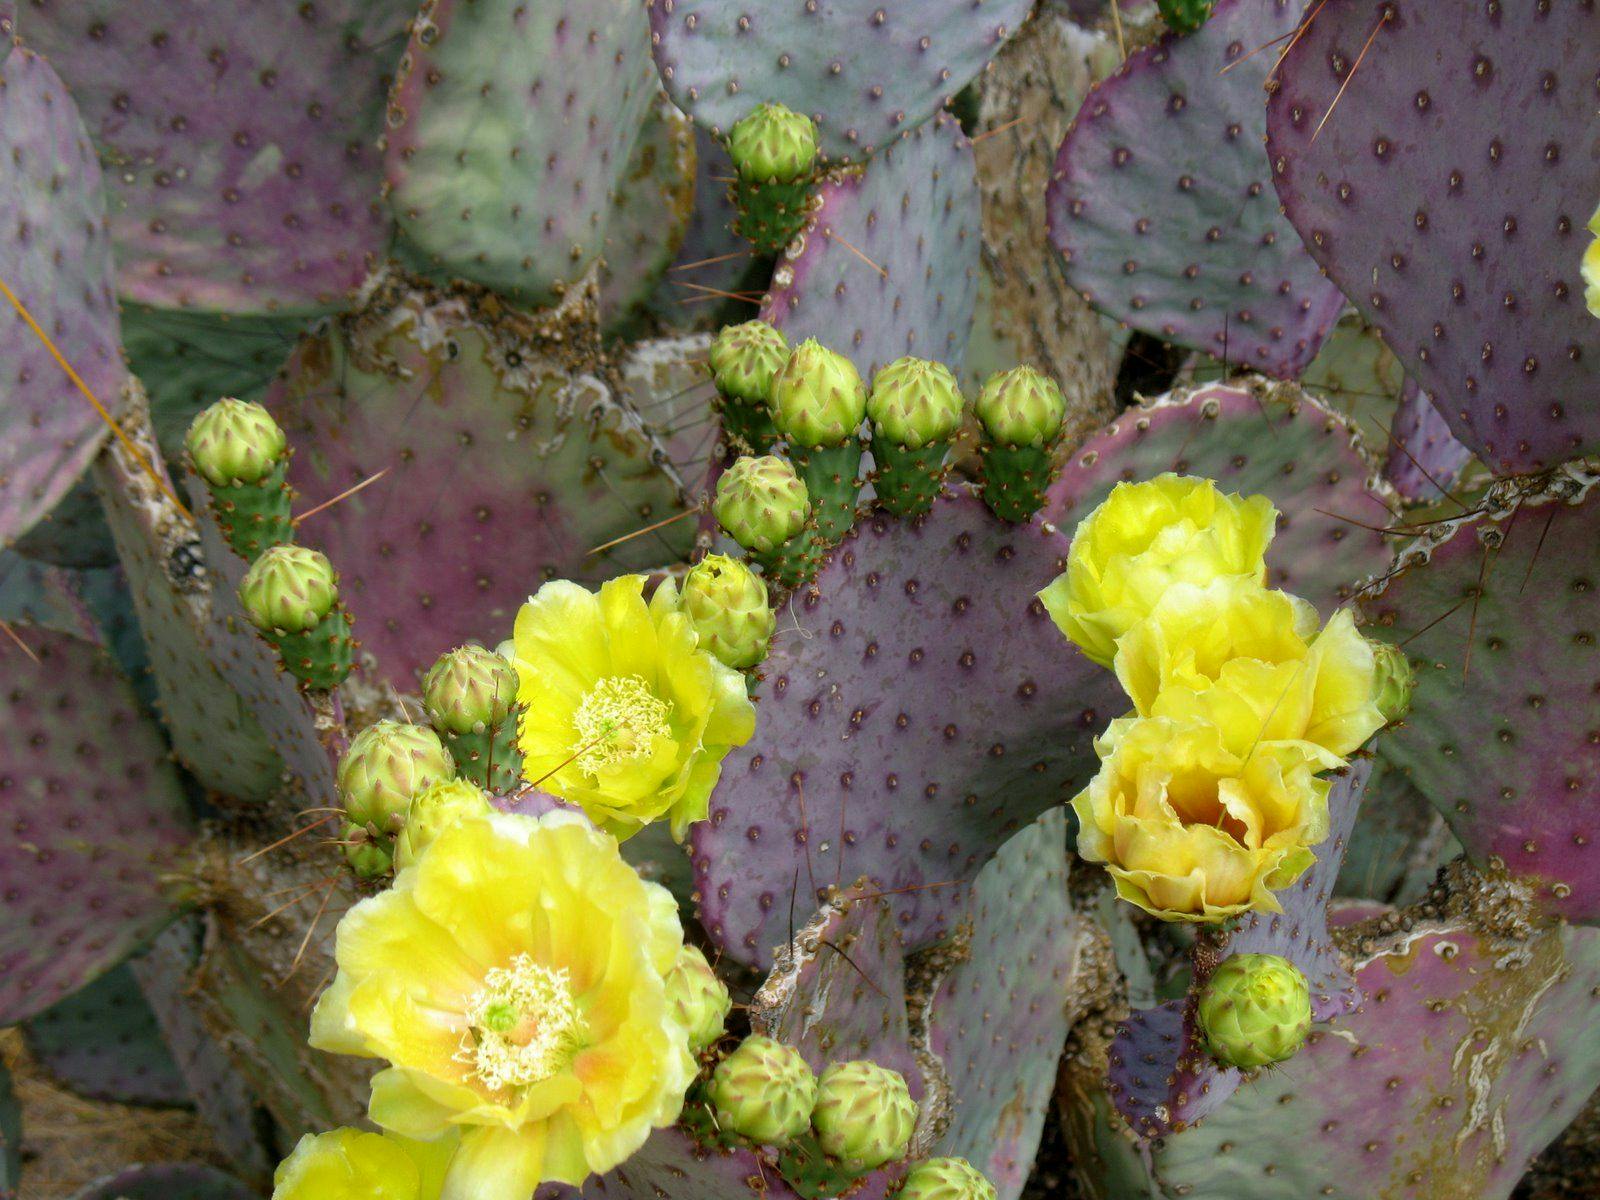 Purple cactus in Ajo